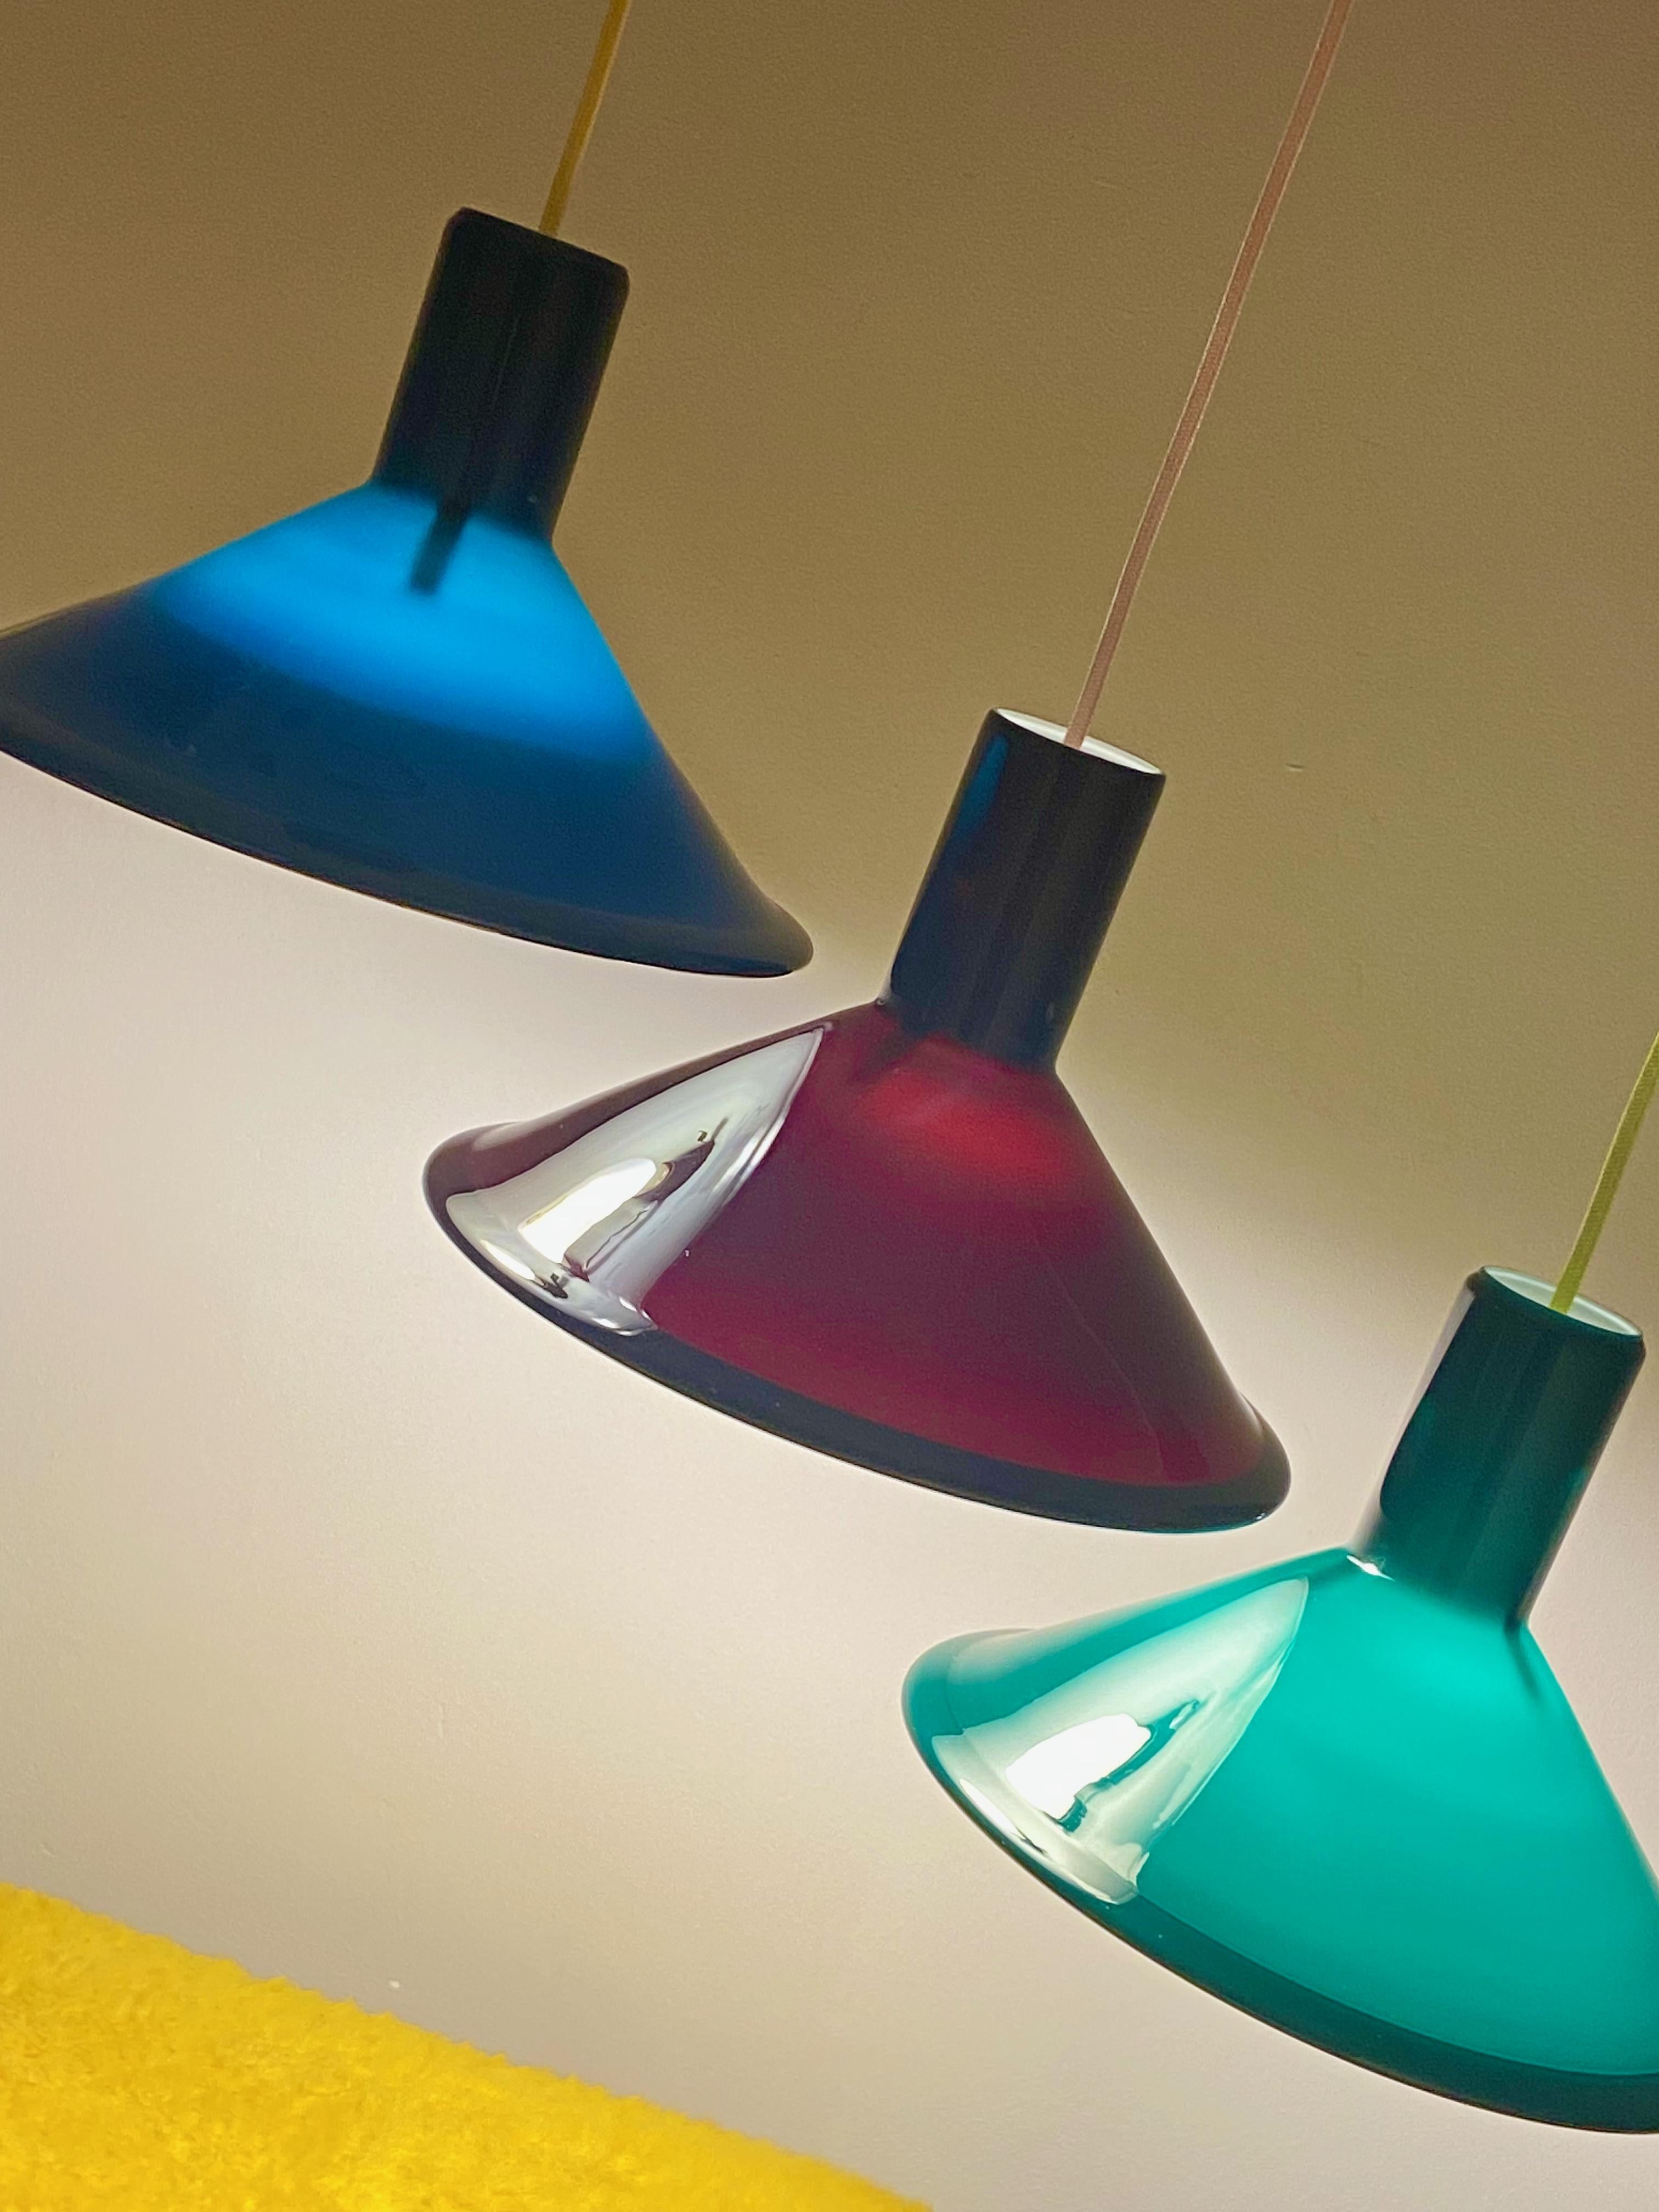 Lampe à suspension AT&T conçue par Michael Bang pour Holmegaard dans les années 1970. Cette lampe danoise en verre opalin est vert foncé à l'extérieur et blanche à l'intérieur. La lampe est en très bon état, pas de dommages et est livrée avec un